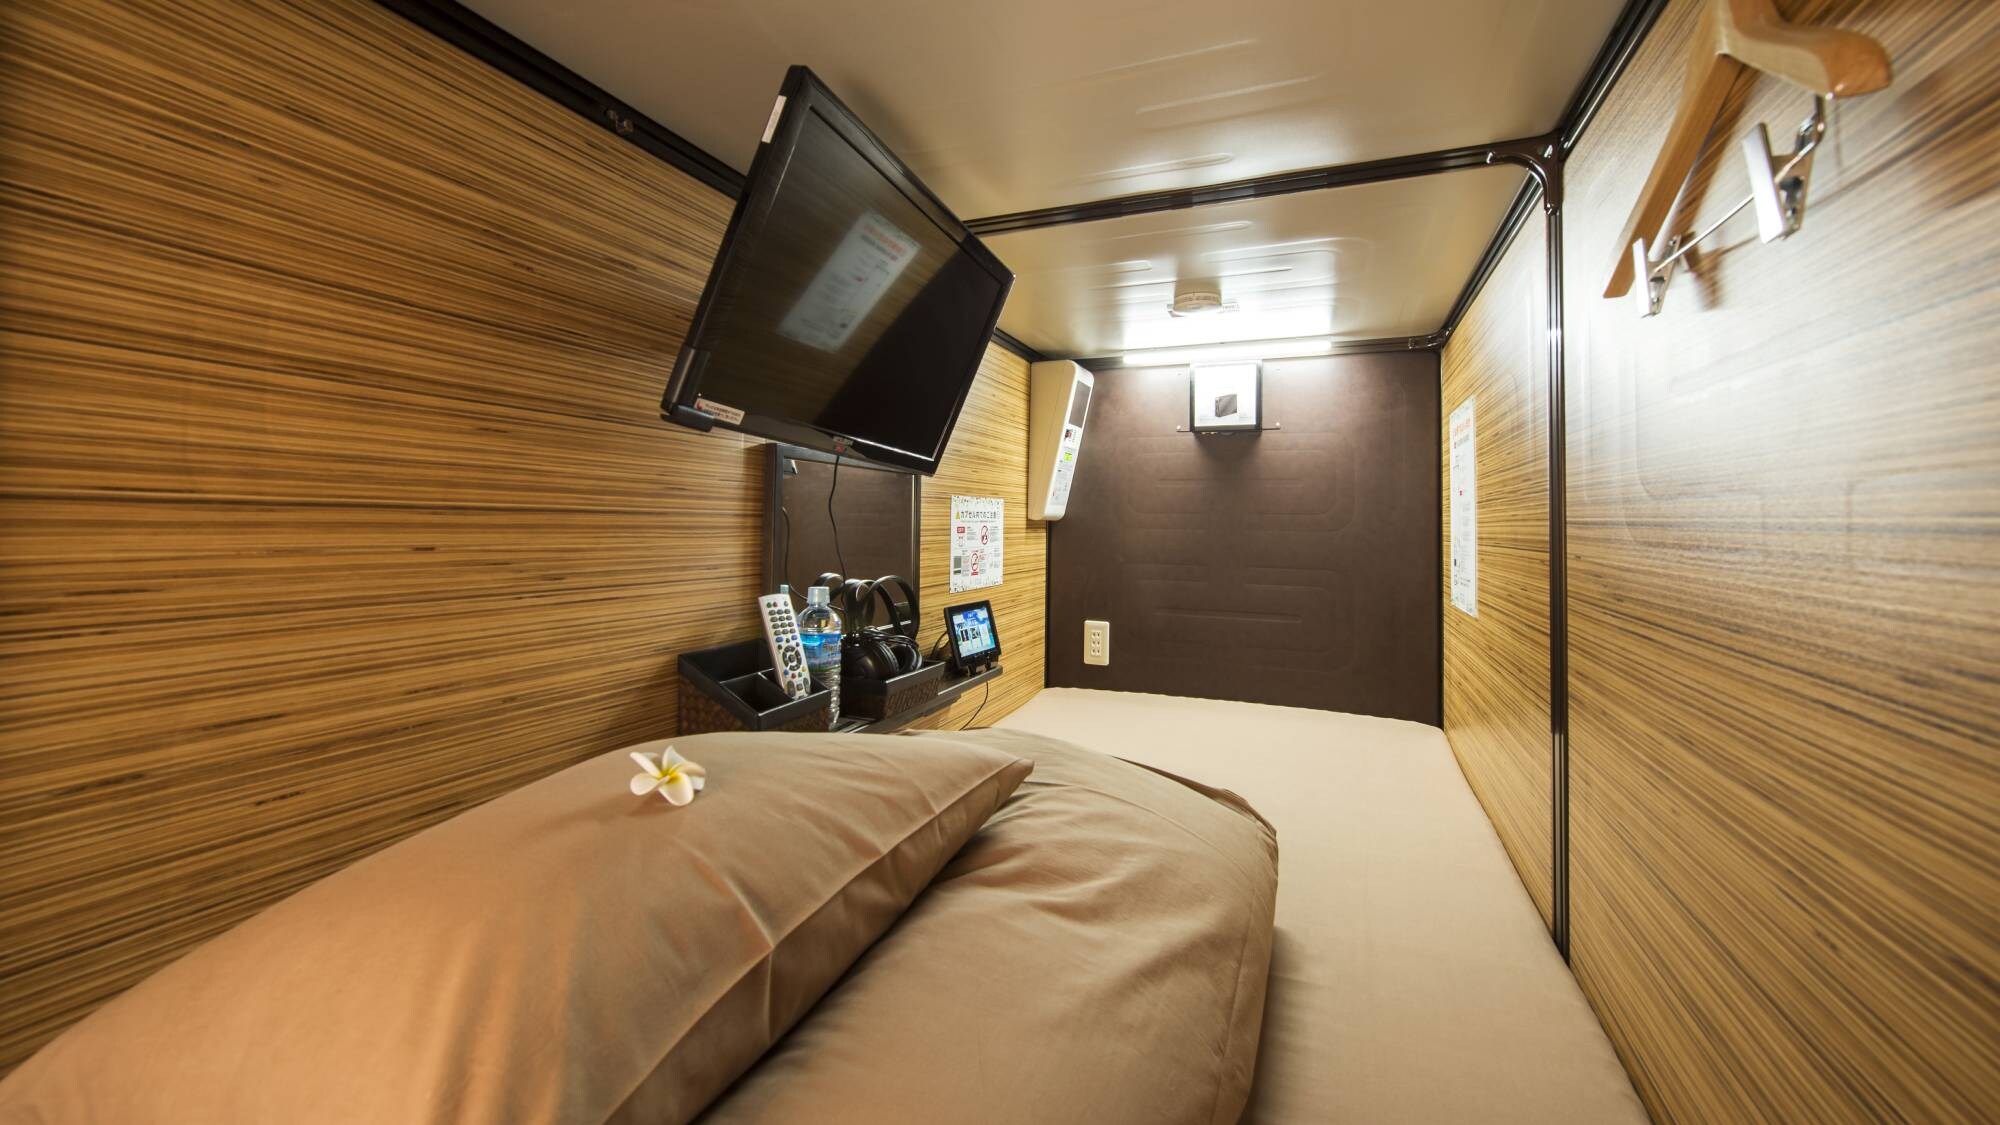 [Kamar Kapsul] Kapsul memberikan istirahat yang nyaman dengan tempat tidur asli domestik murni dan kasur tebal